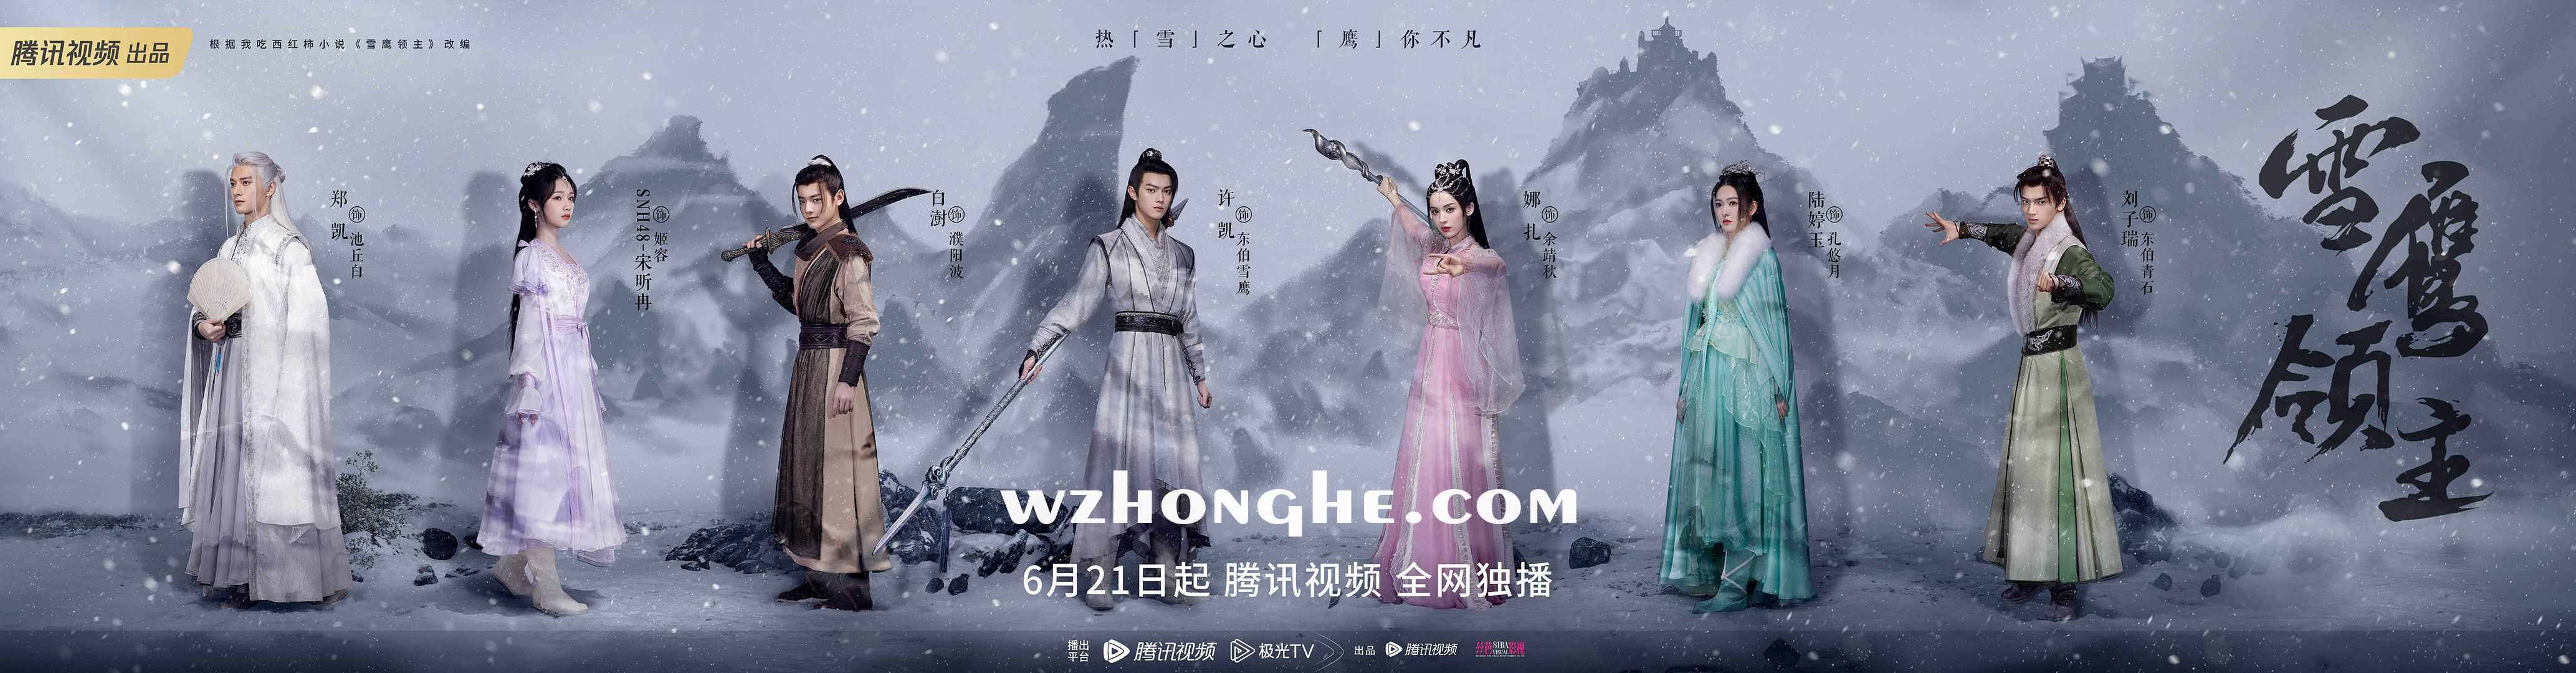 雪鹰领主 - 无中和wzhonghe.com -2